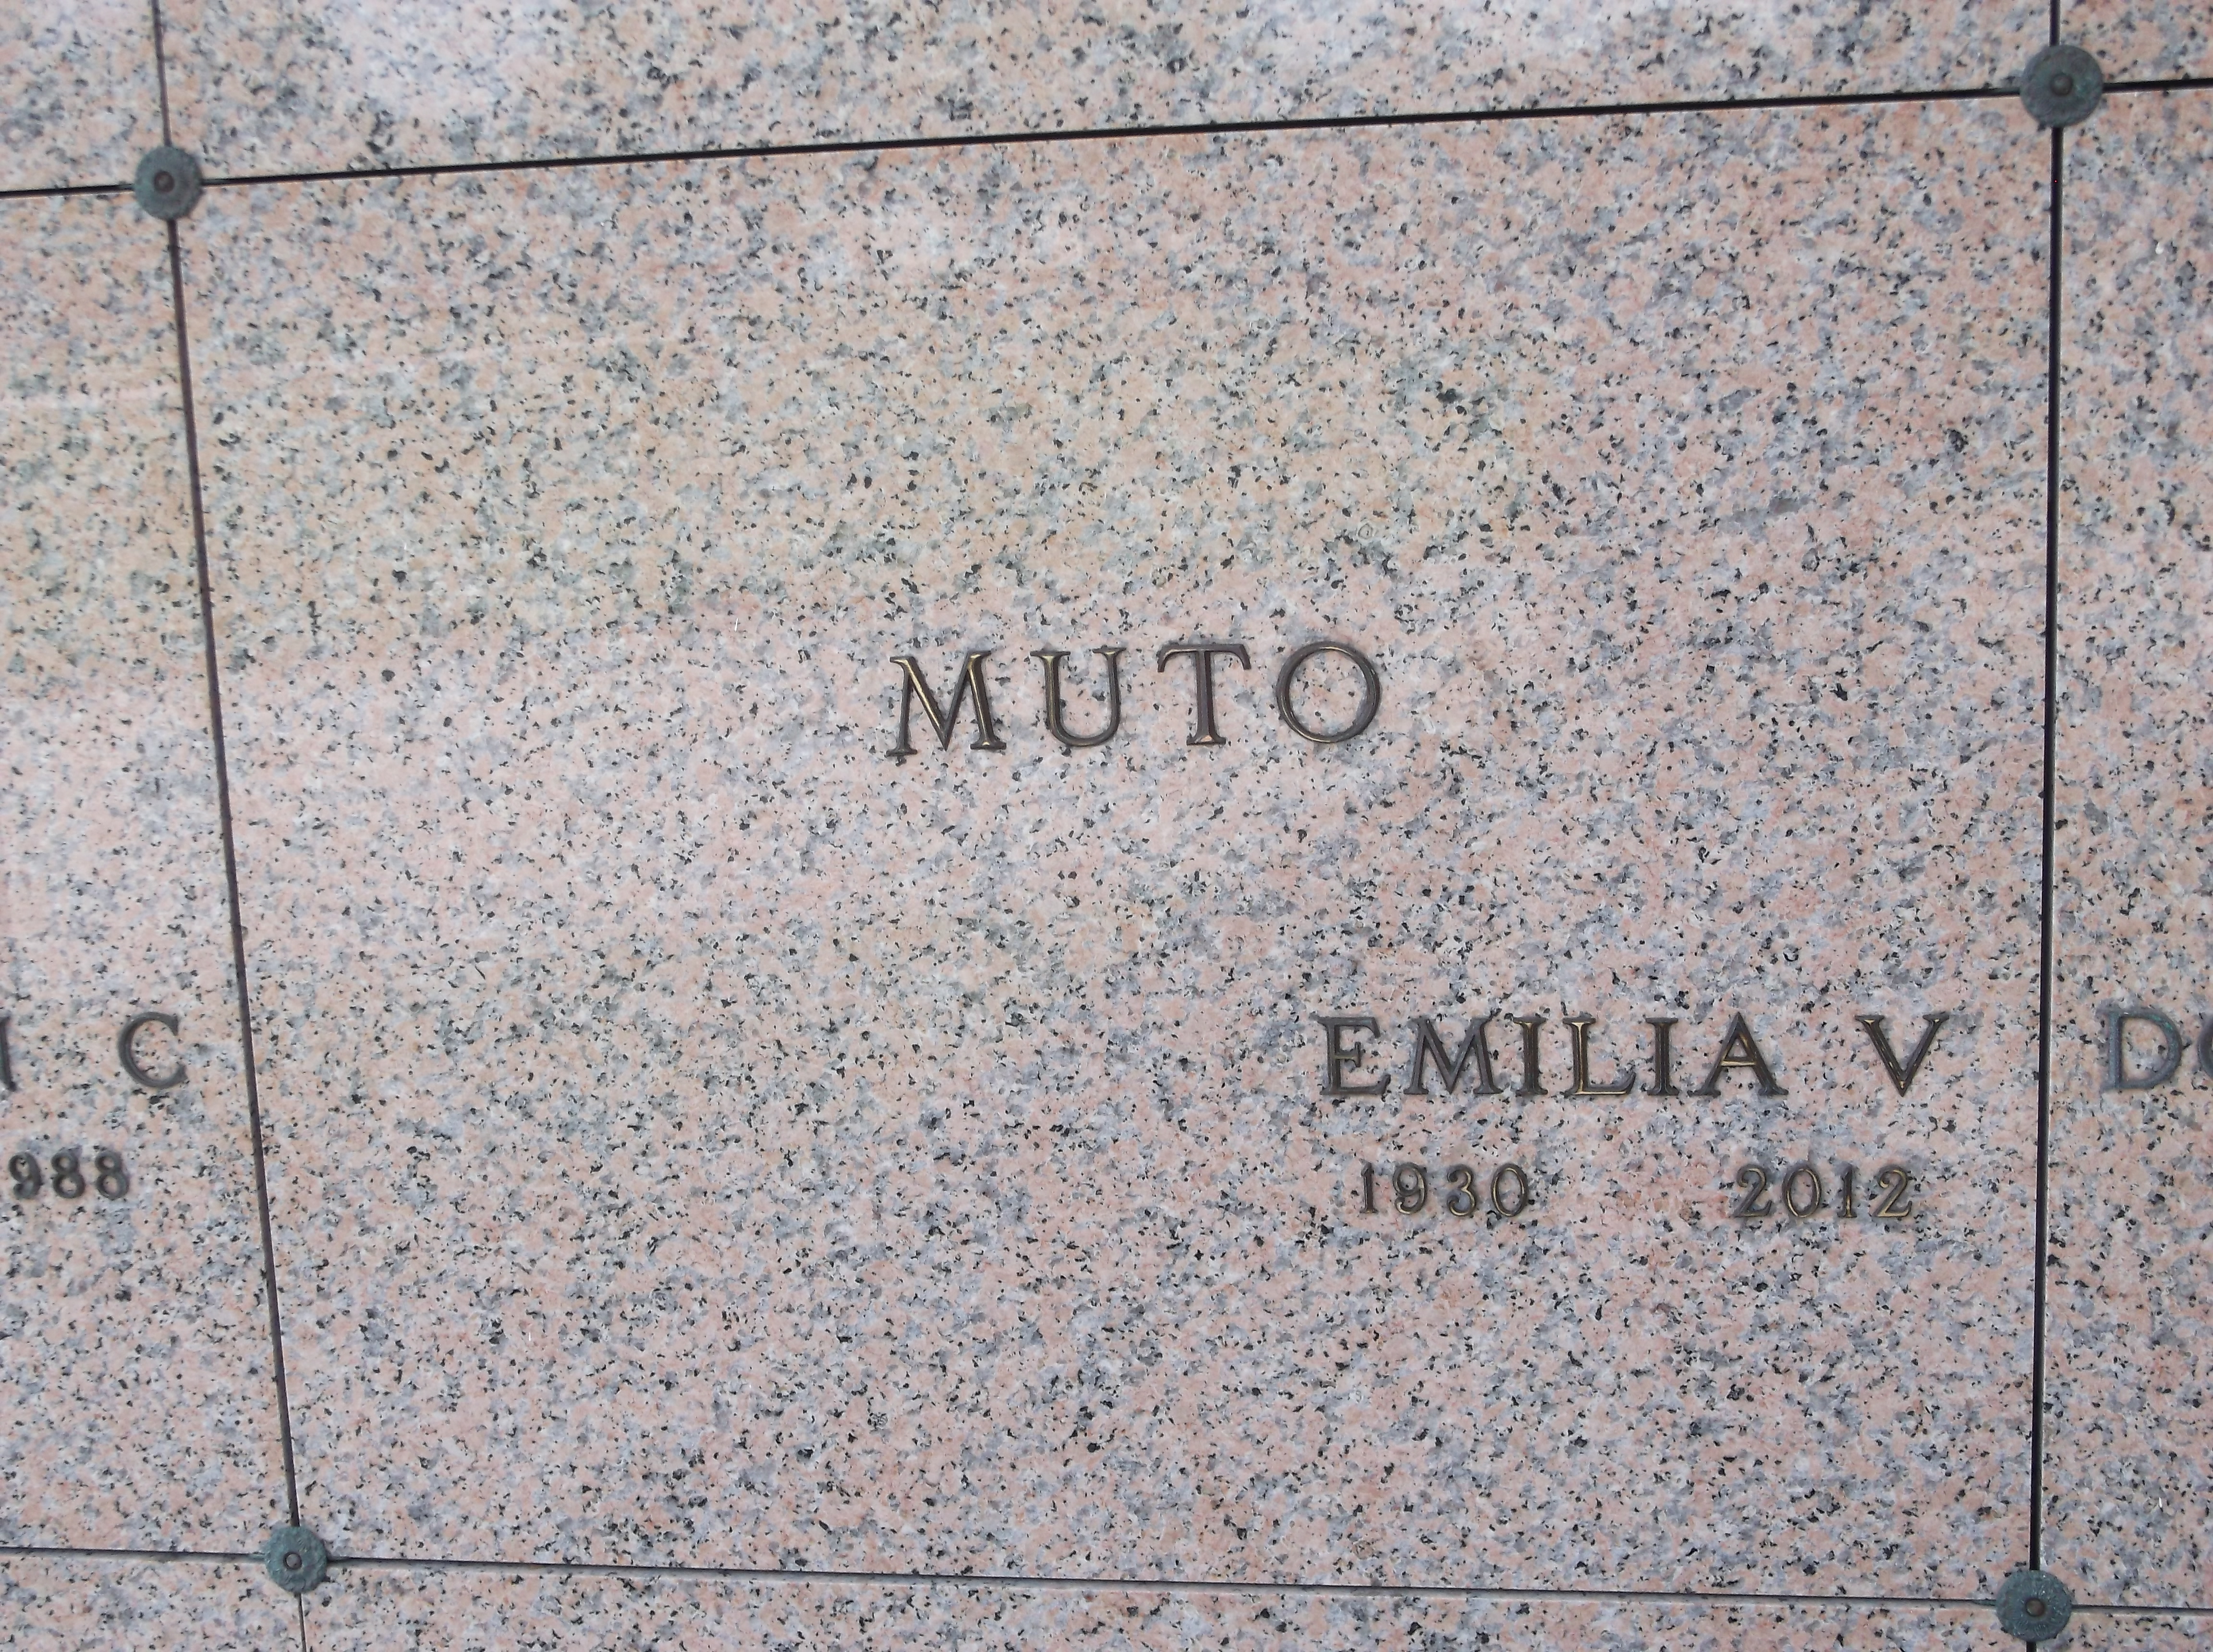 Emilia V Muto